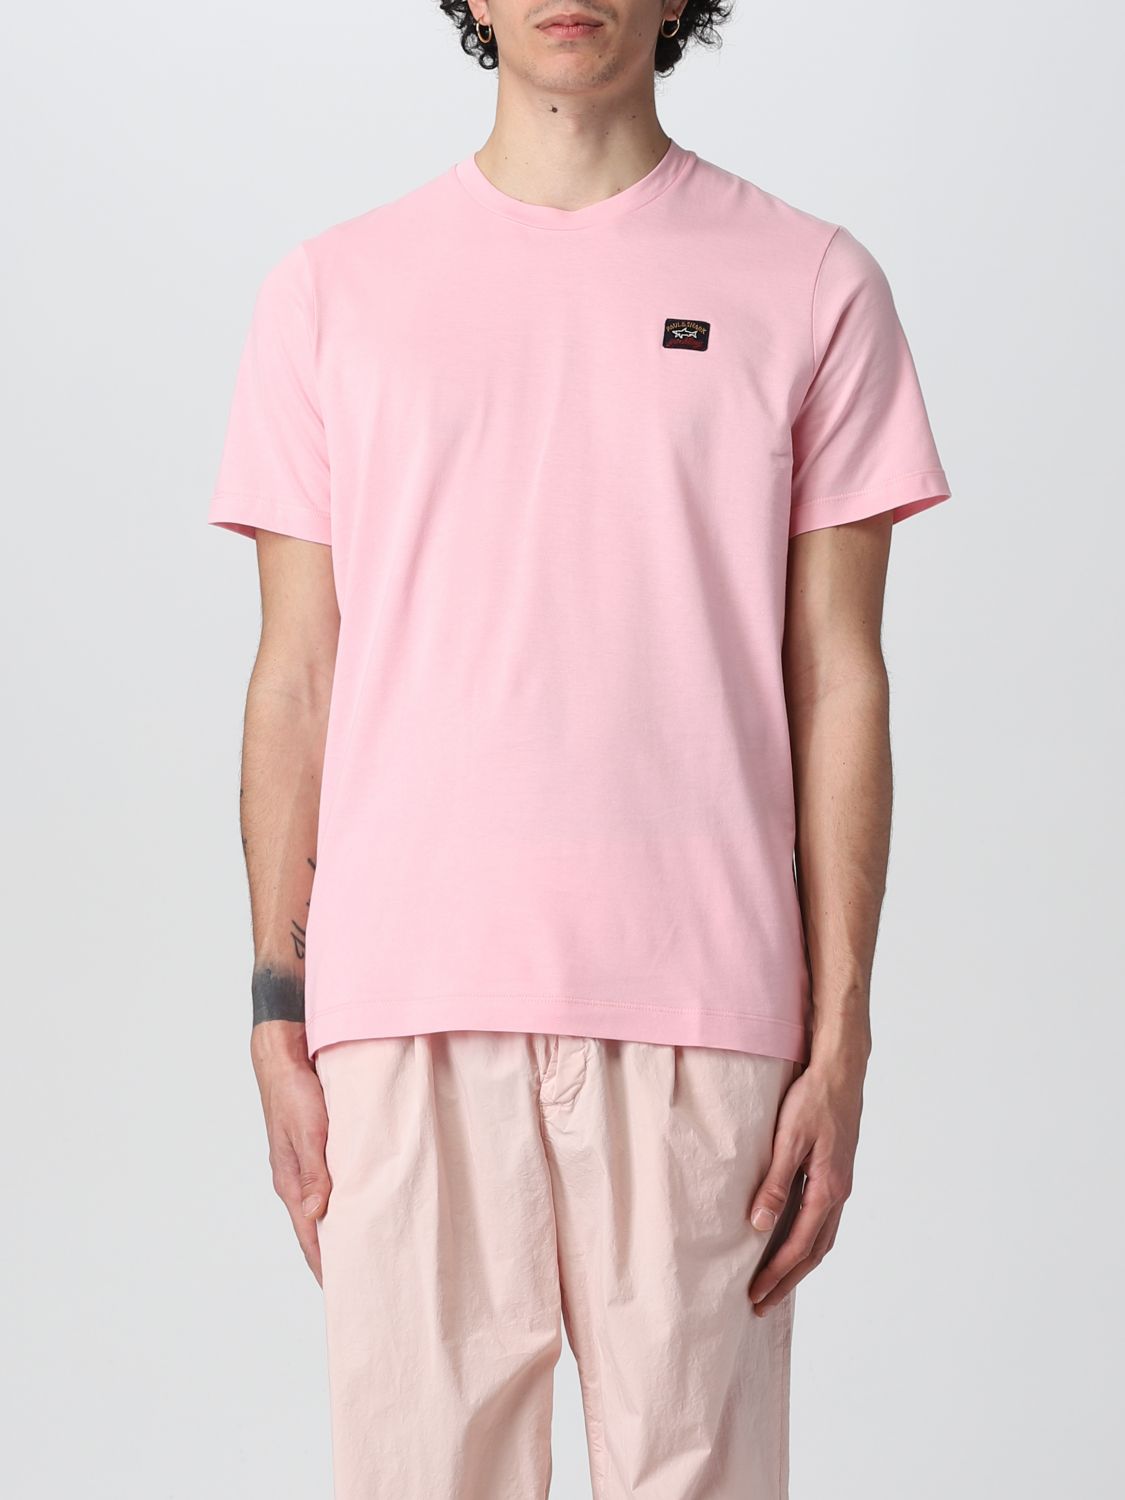 Paul Shark Tシャツ メンズ ピンク Giglio Comオンラインのpaul Shark Tシャツ C0p1002